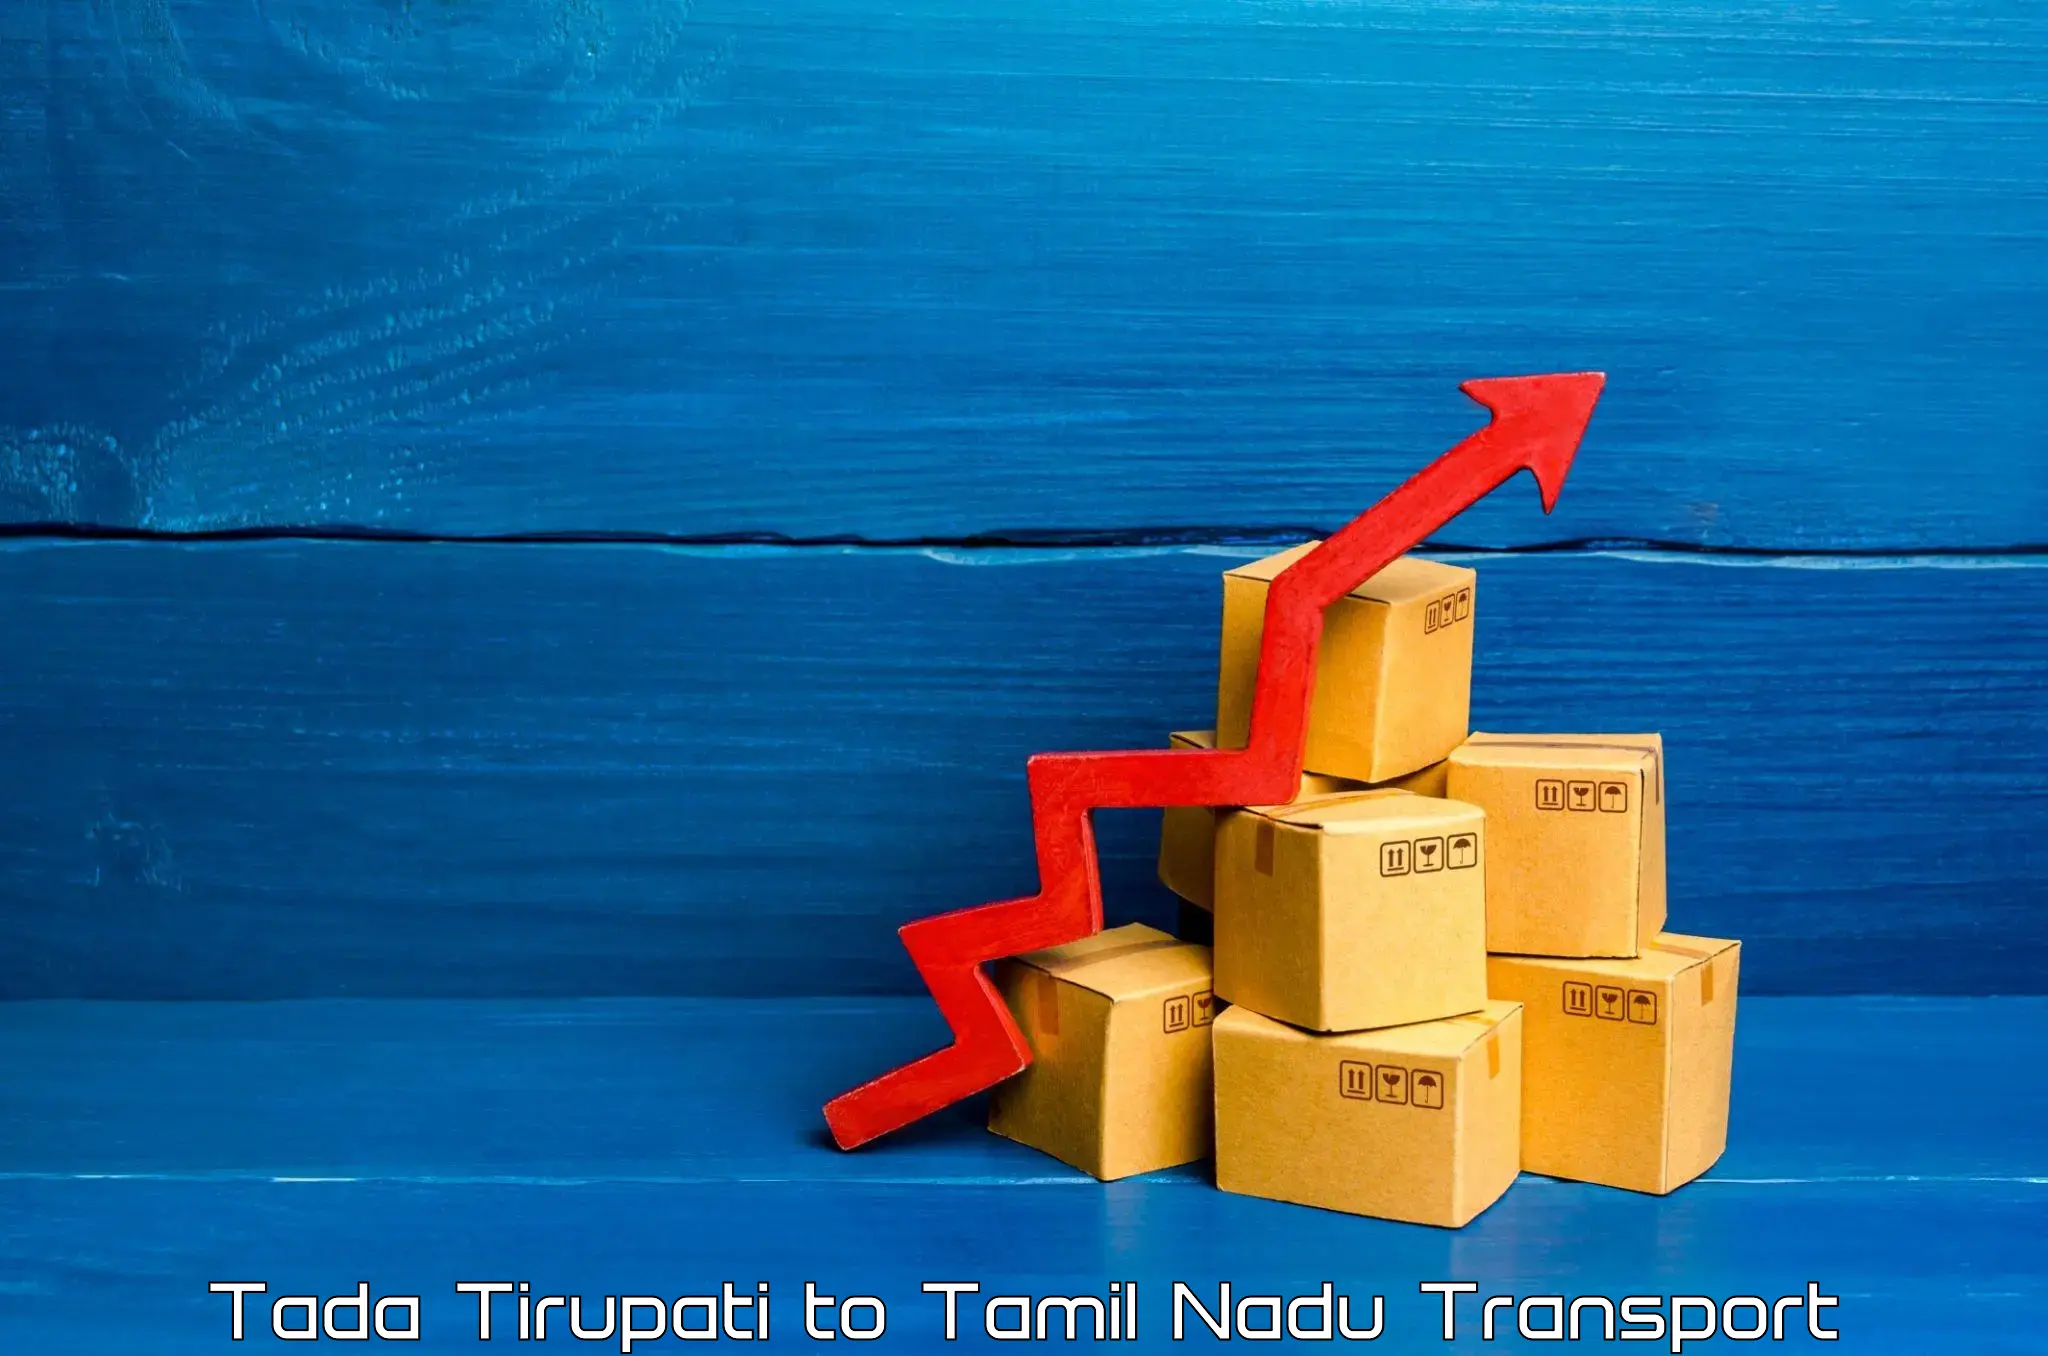 Logistics transportation services Tada Tirupati to Tamil Nadu